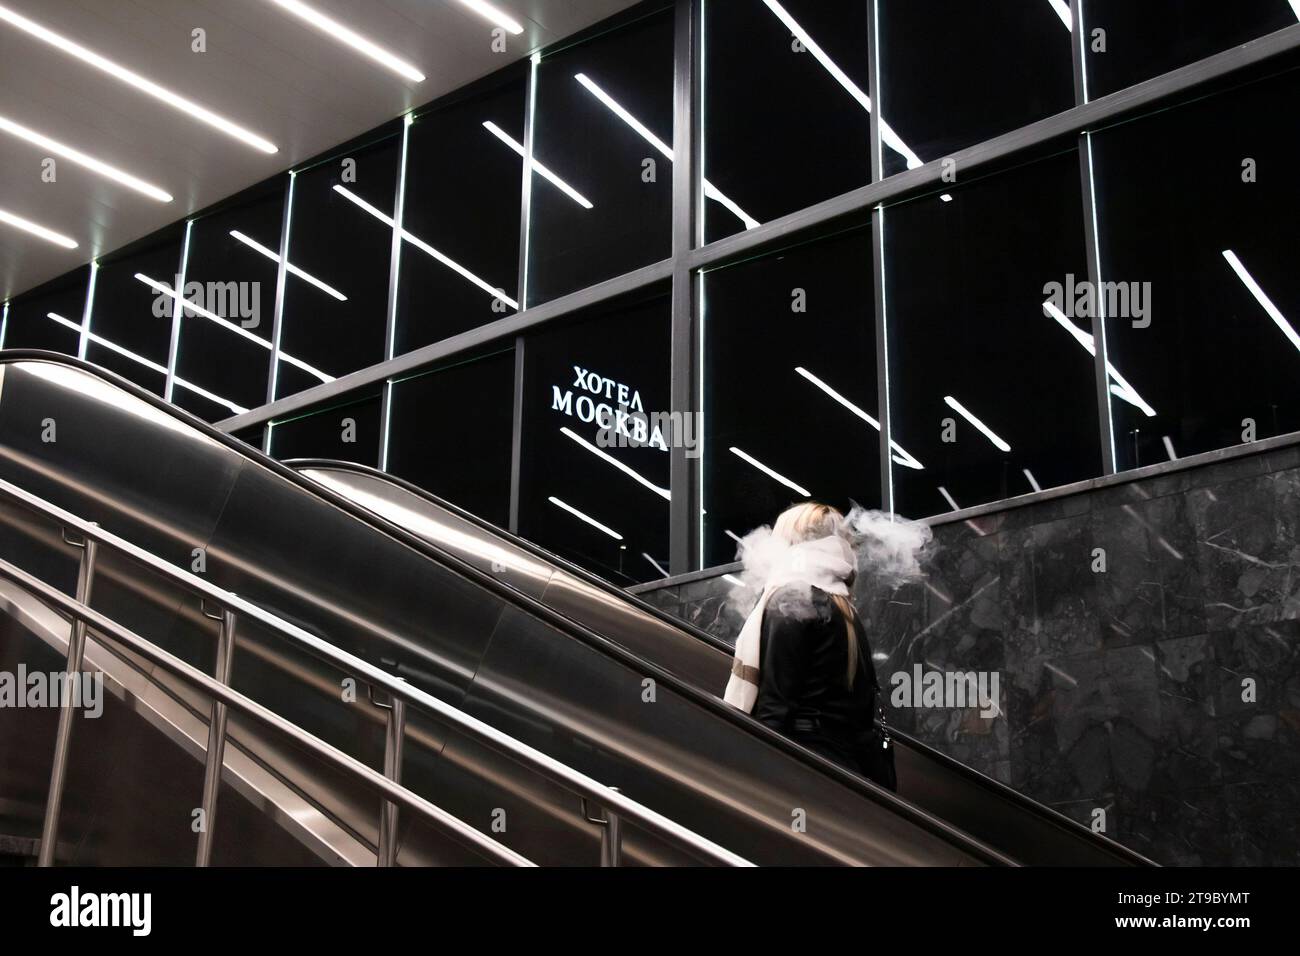 Belgrado, Serbia - 20 novembre 2023: Persona che sale sulla scala mobile della metropolitana, con luci interne riflettenti e cartello dell'hotel Mosca in caratteri cirillici Foto Stock